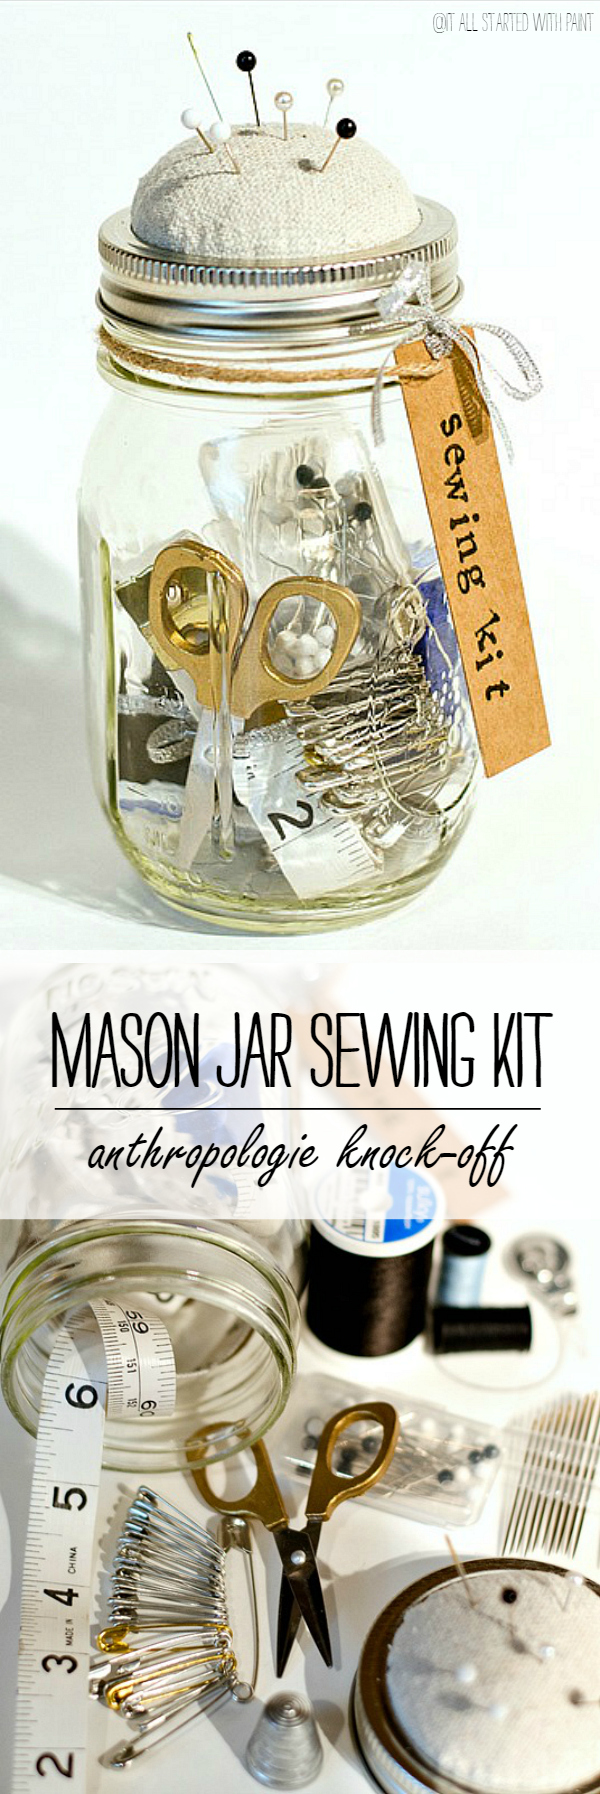 Mason Jar Craft: Anthropologie Sewing Kit